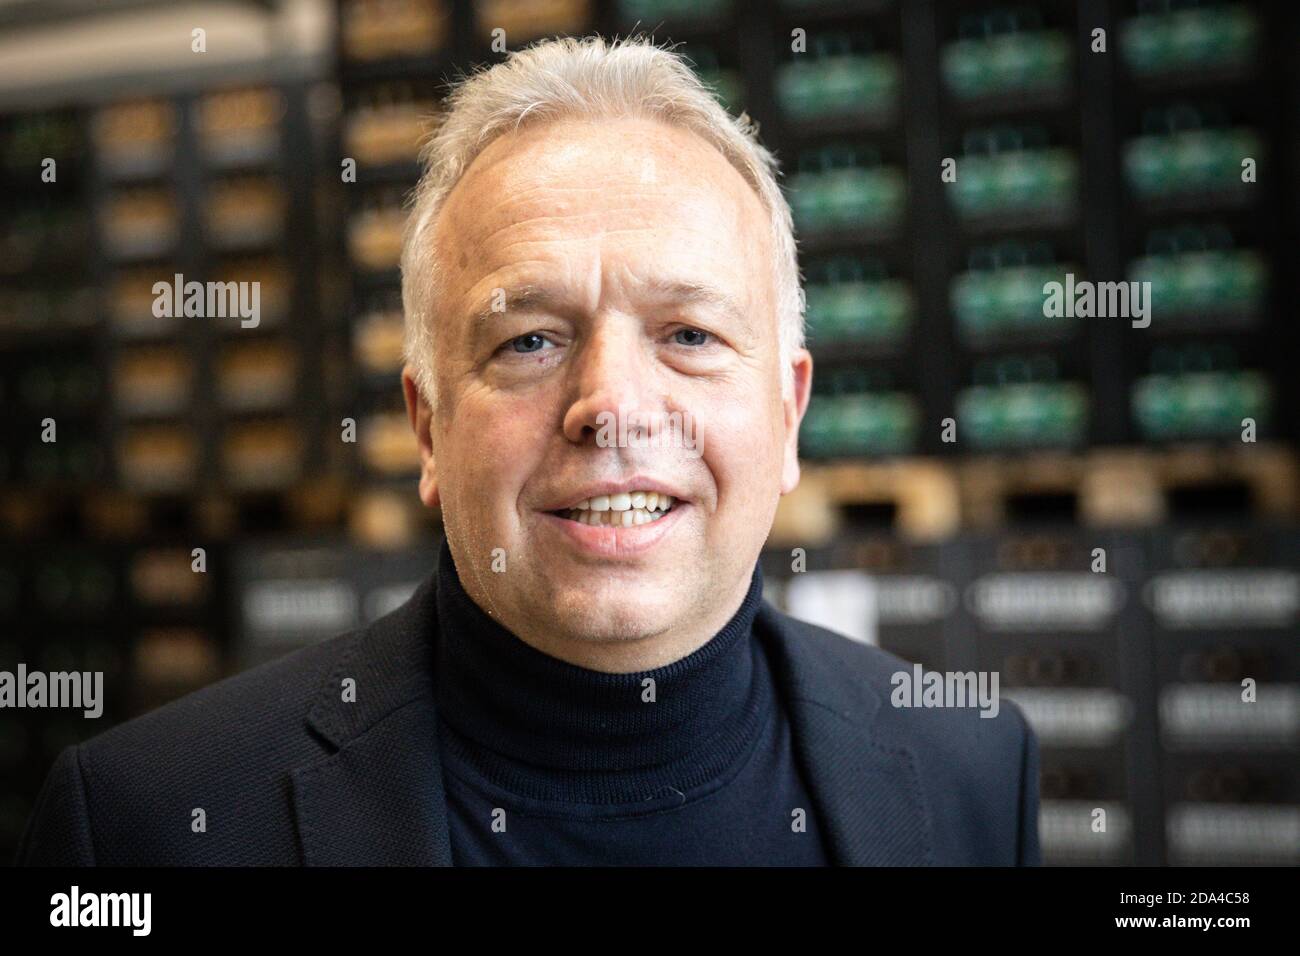 23 ottobre 2020, Amburgo: Oliver Nordmann, socio di gestione della fabbrica di birra Ratsherrn, in occasione dell'inaugurazione del nuovo impianto di imbottigliamento della fabbrica di birra di Amburgo. Foto: Christian Charisius/dpa Foto Stock